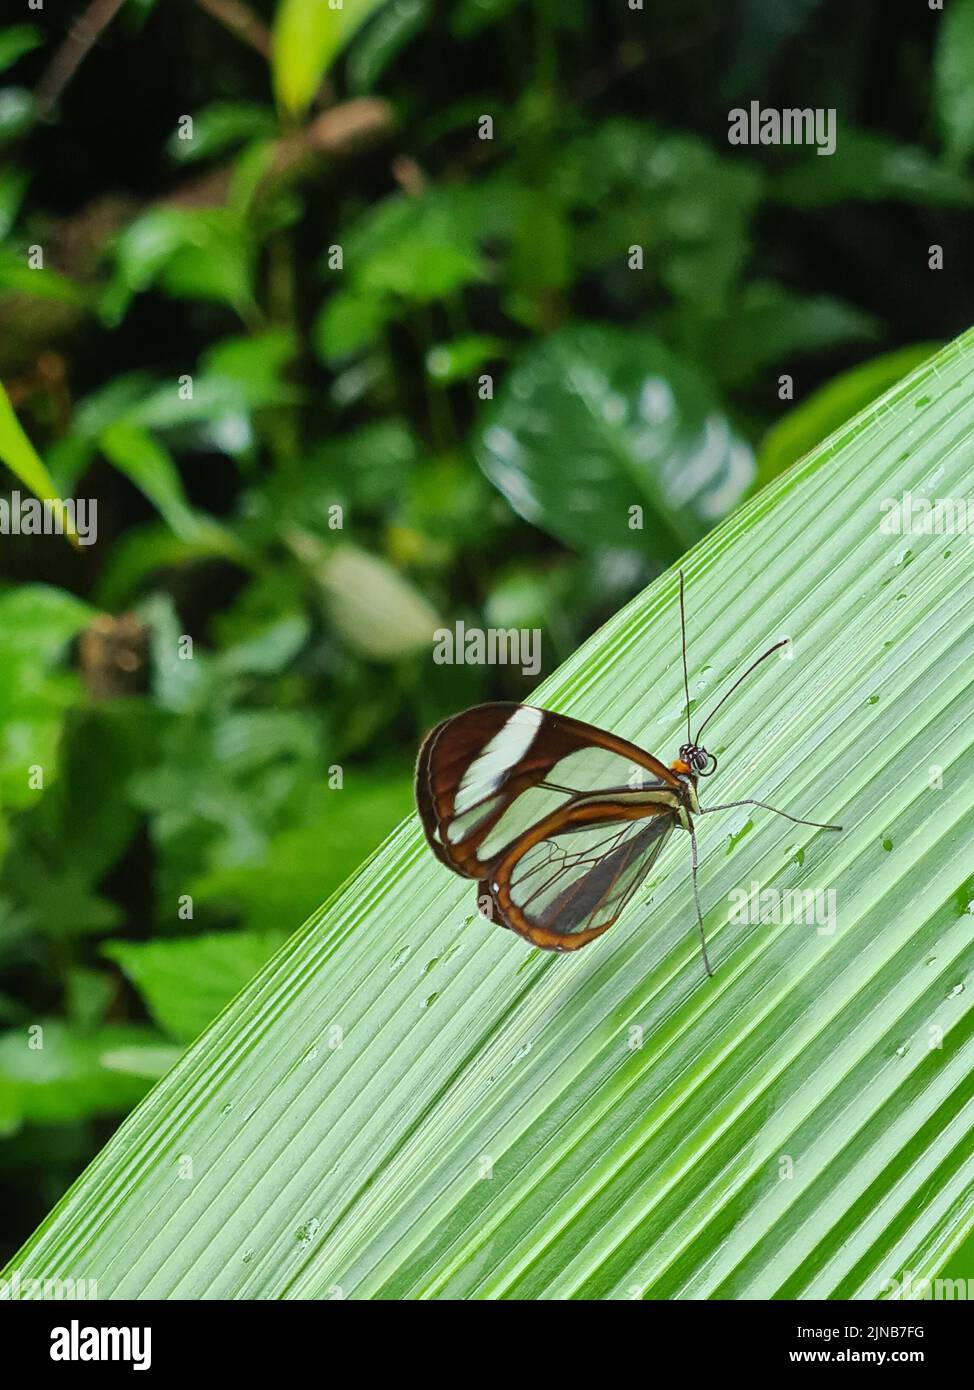 Mariposa marrón con alas transparentes sentada sobre una hoja verde sobre un fondo natural borroso Foto de stock